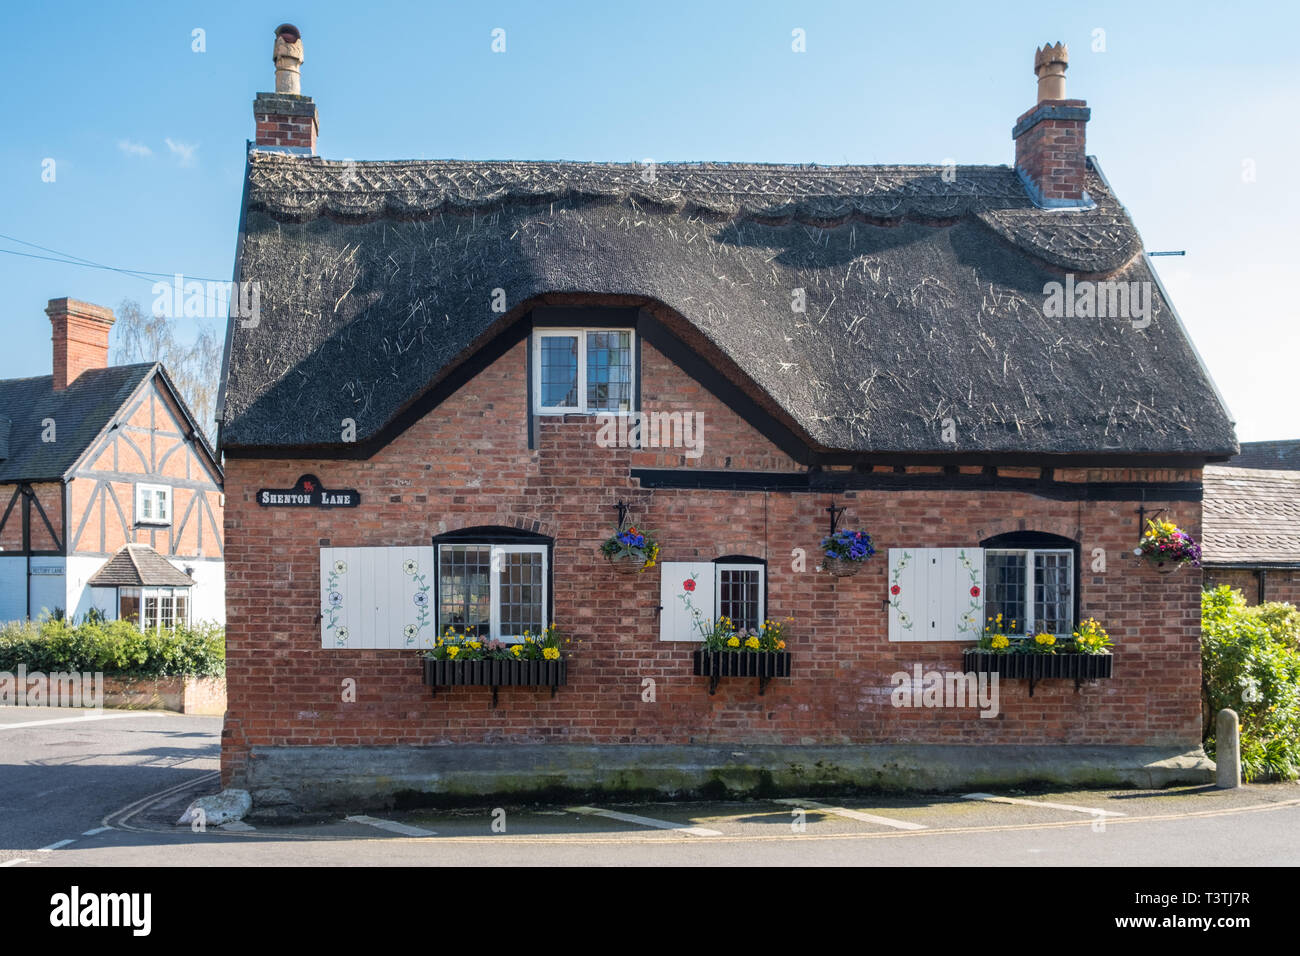 Petite maison au toit de chaume de brique dans le centre historique de la ville de Market Bosworth, Leicestershire, UK Banque D'Images